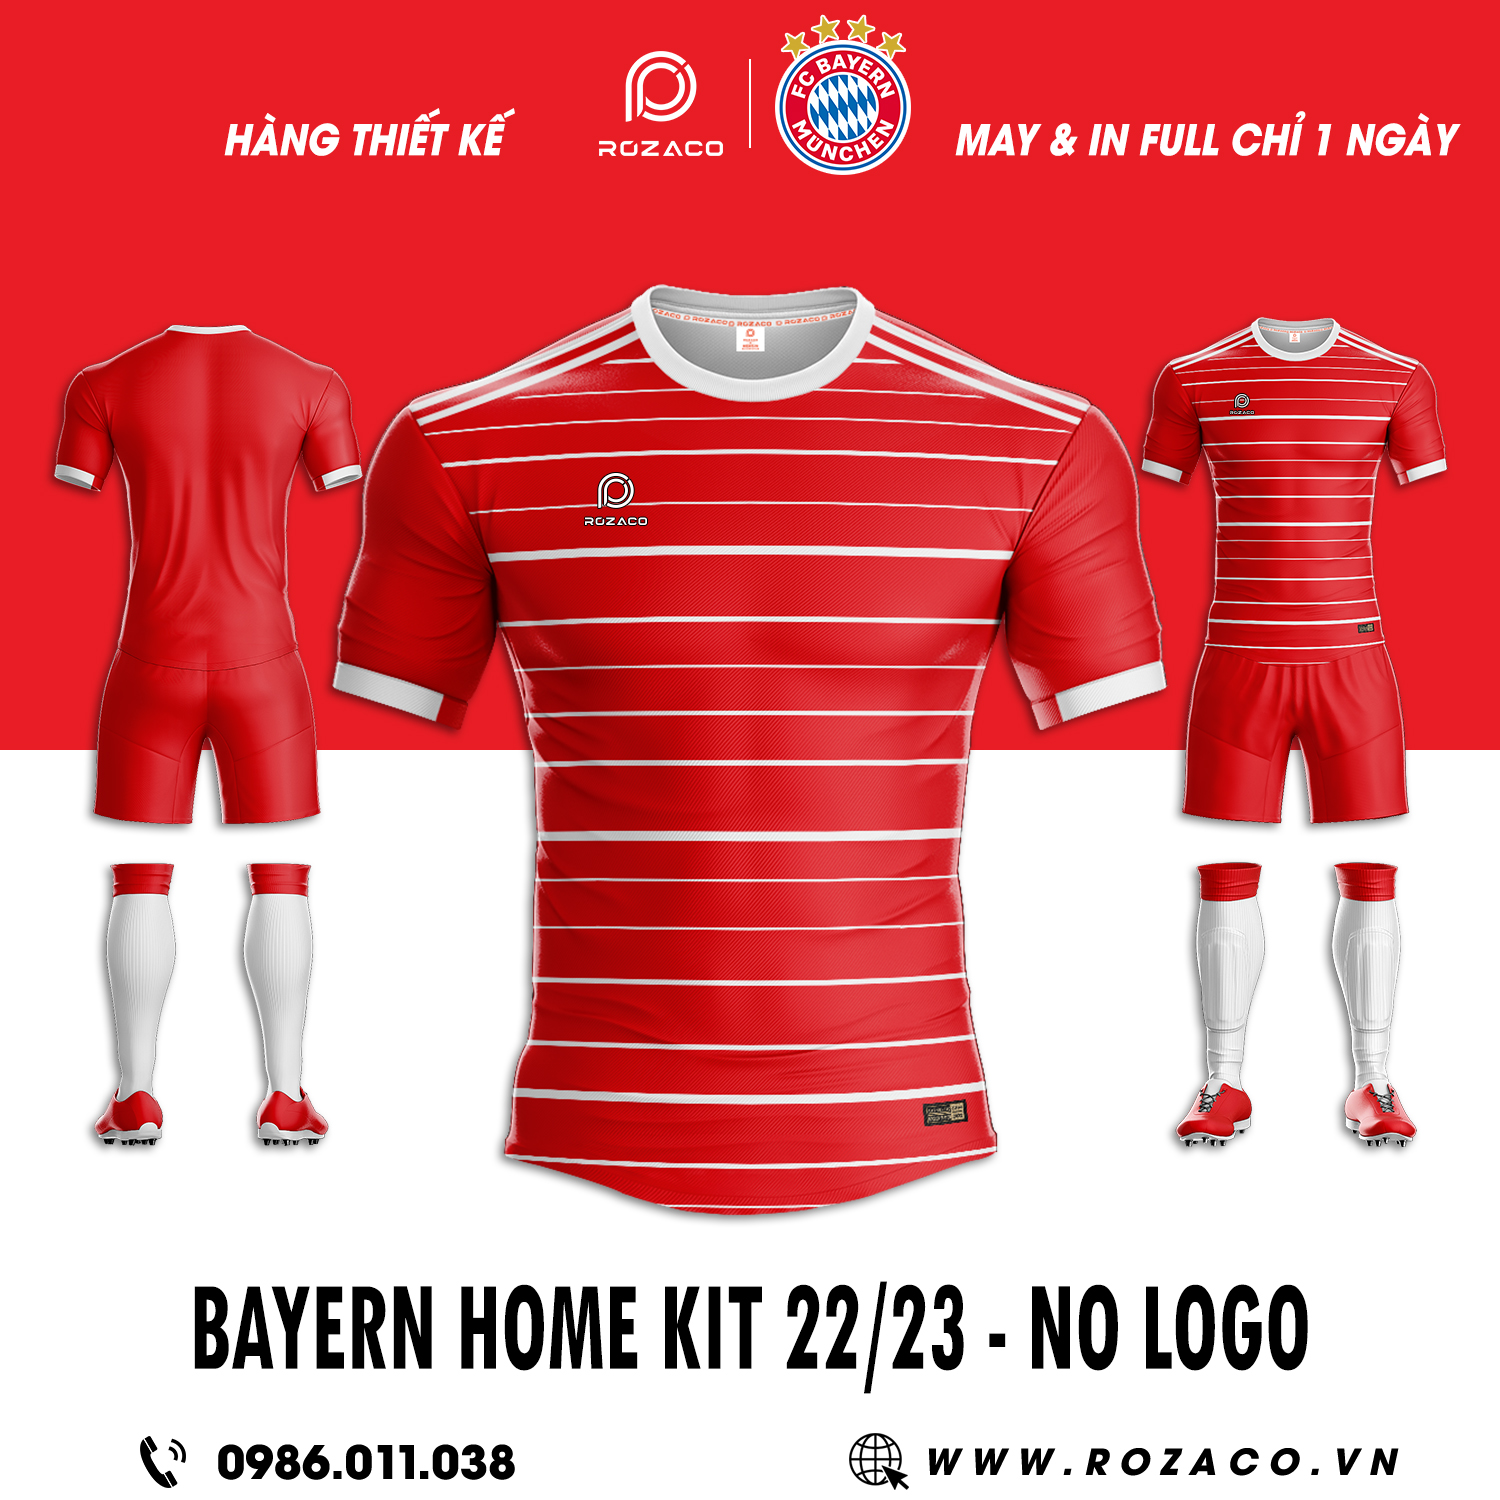 Áo câu lạc bộ Bayern sân nhà 2023 chính thức được chúng tôi cho ra mắt nhằm phục vụ cho những người hâm mộ yêu thích đội bóng này. Thiết kế với gam màu tươi tắn, đẹp mắt phối cùng sọc trắng thu hút. 